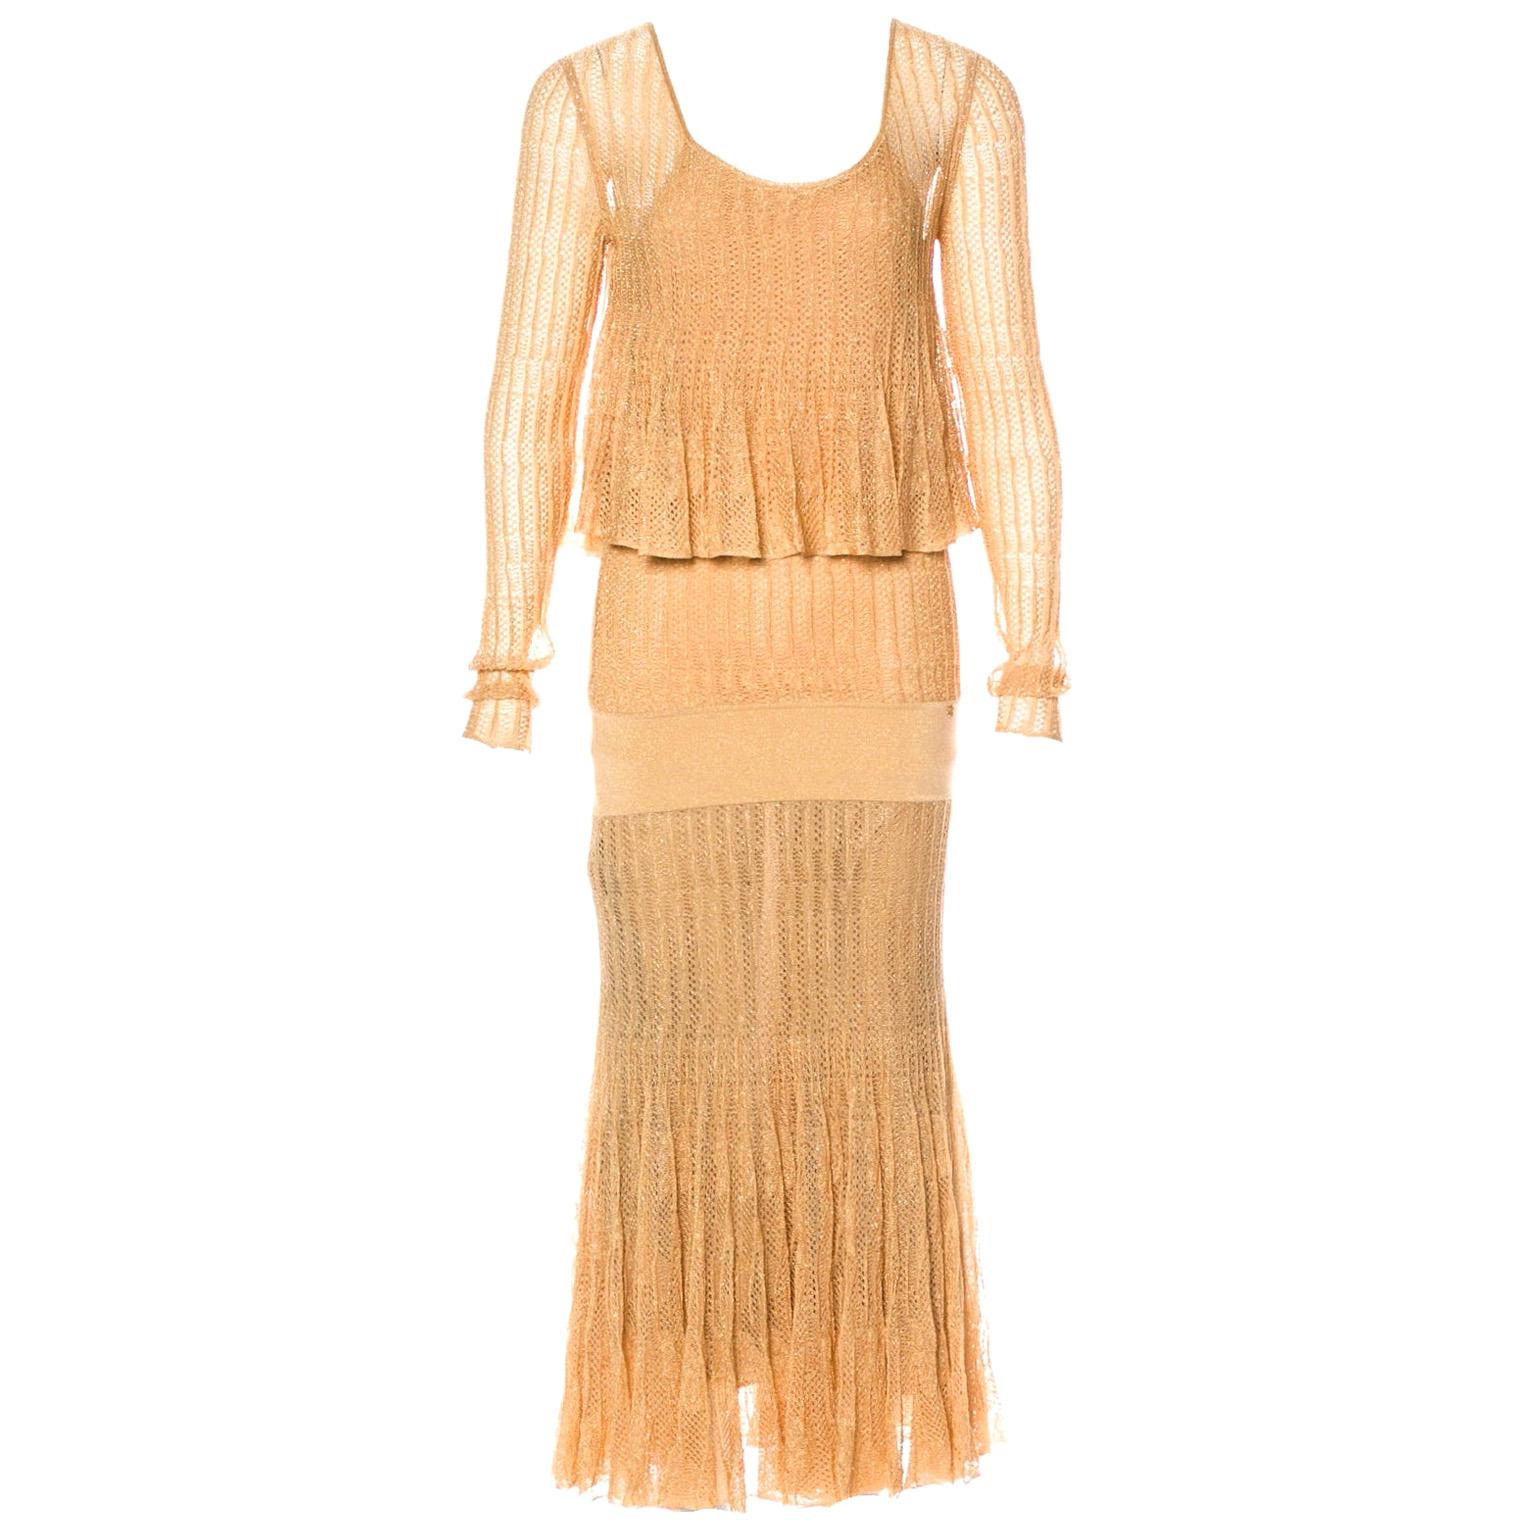 UNWORN Chanel Métiers d’Art Gold Metallic Crochet Knit Maxi Dress Gown 40